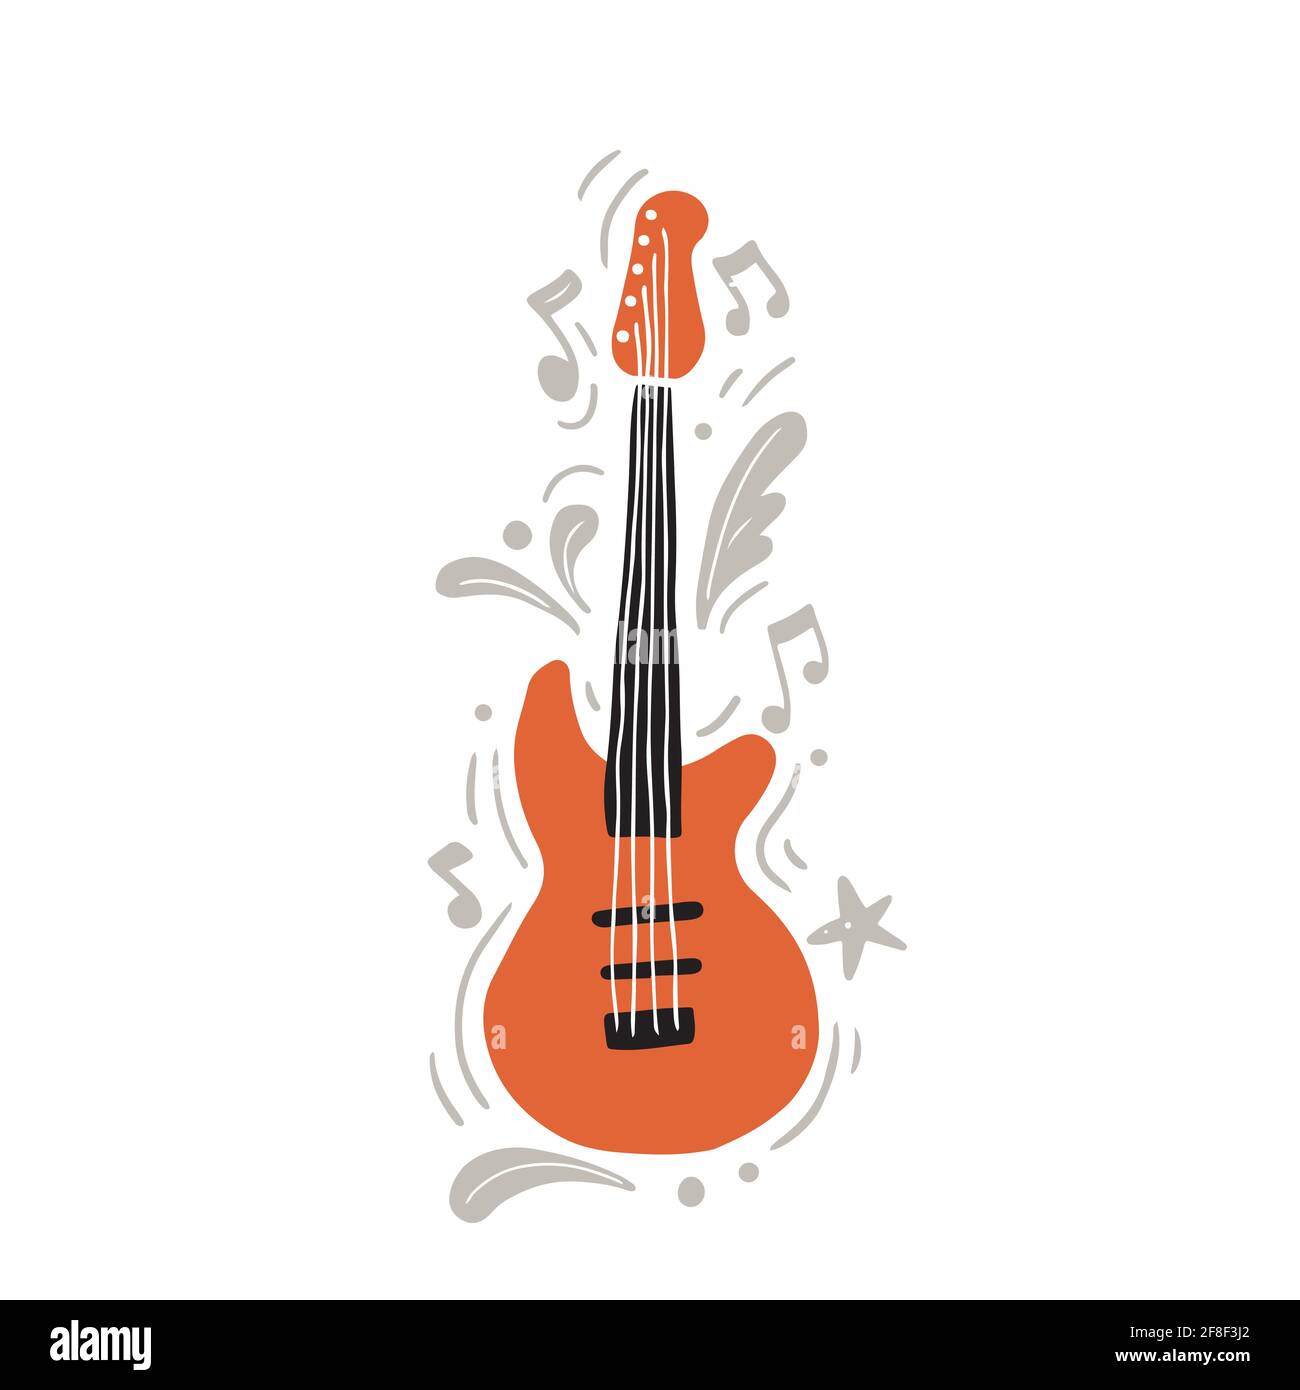 Vektor-Illustration auf orange und schwarz moderne E-Gitarre von Schwarz und orange Farbe von Hand gezeichnet mit minimalistischem flachen Stil Rockmusik inmitten grauer Ornamente und Noten Stock Vektor